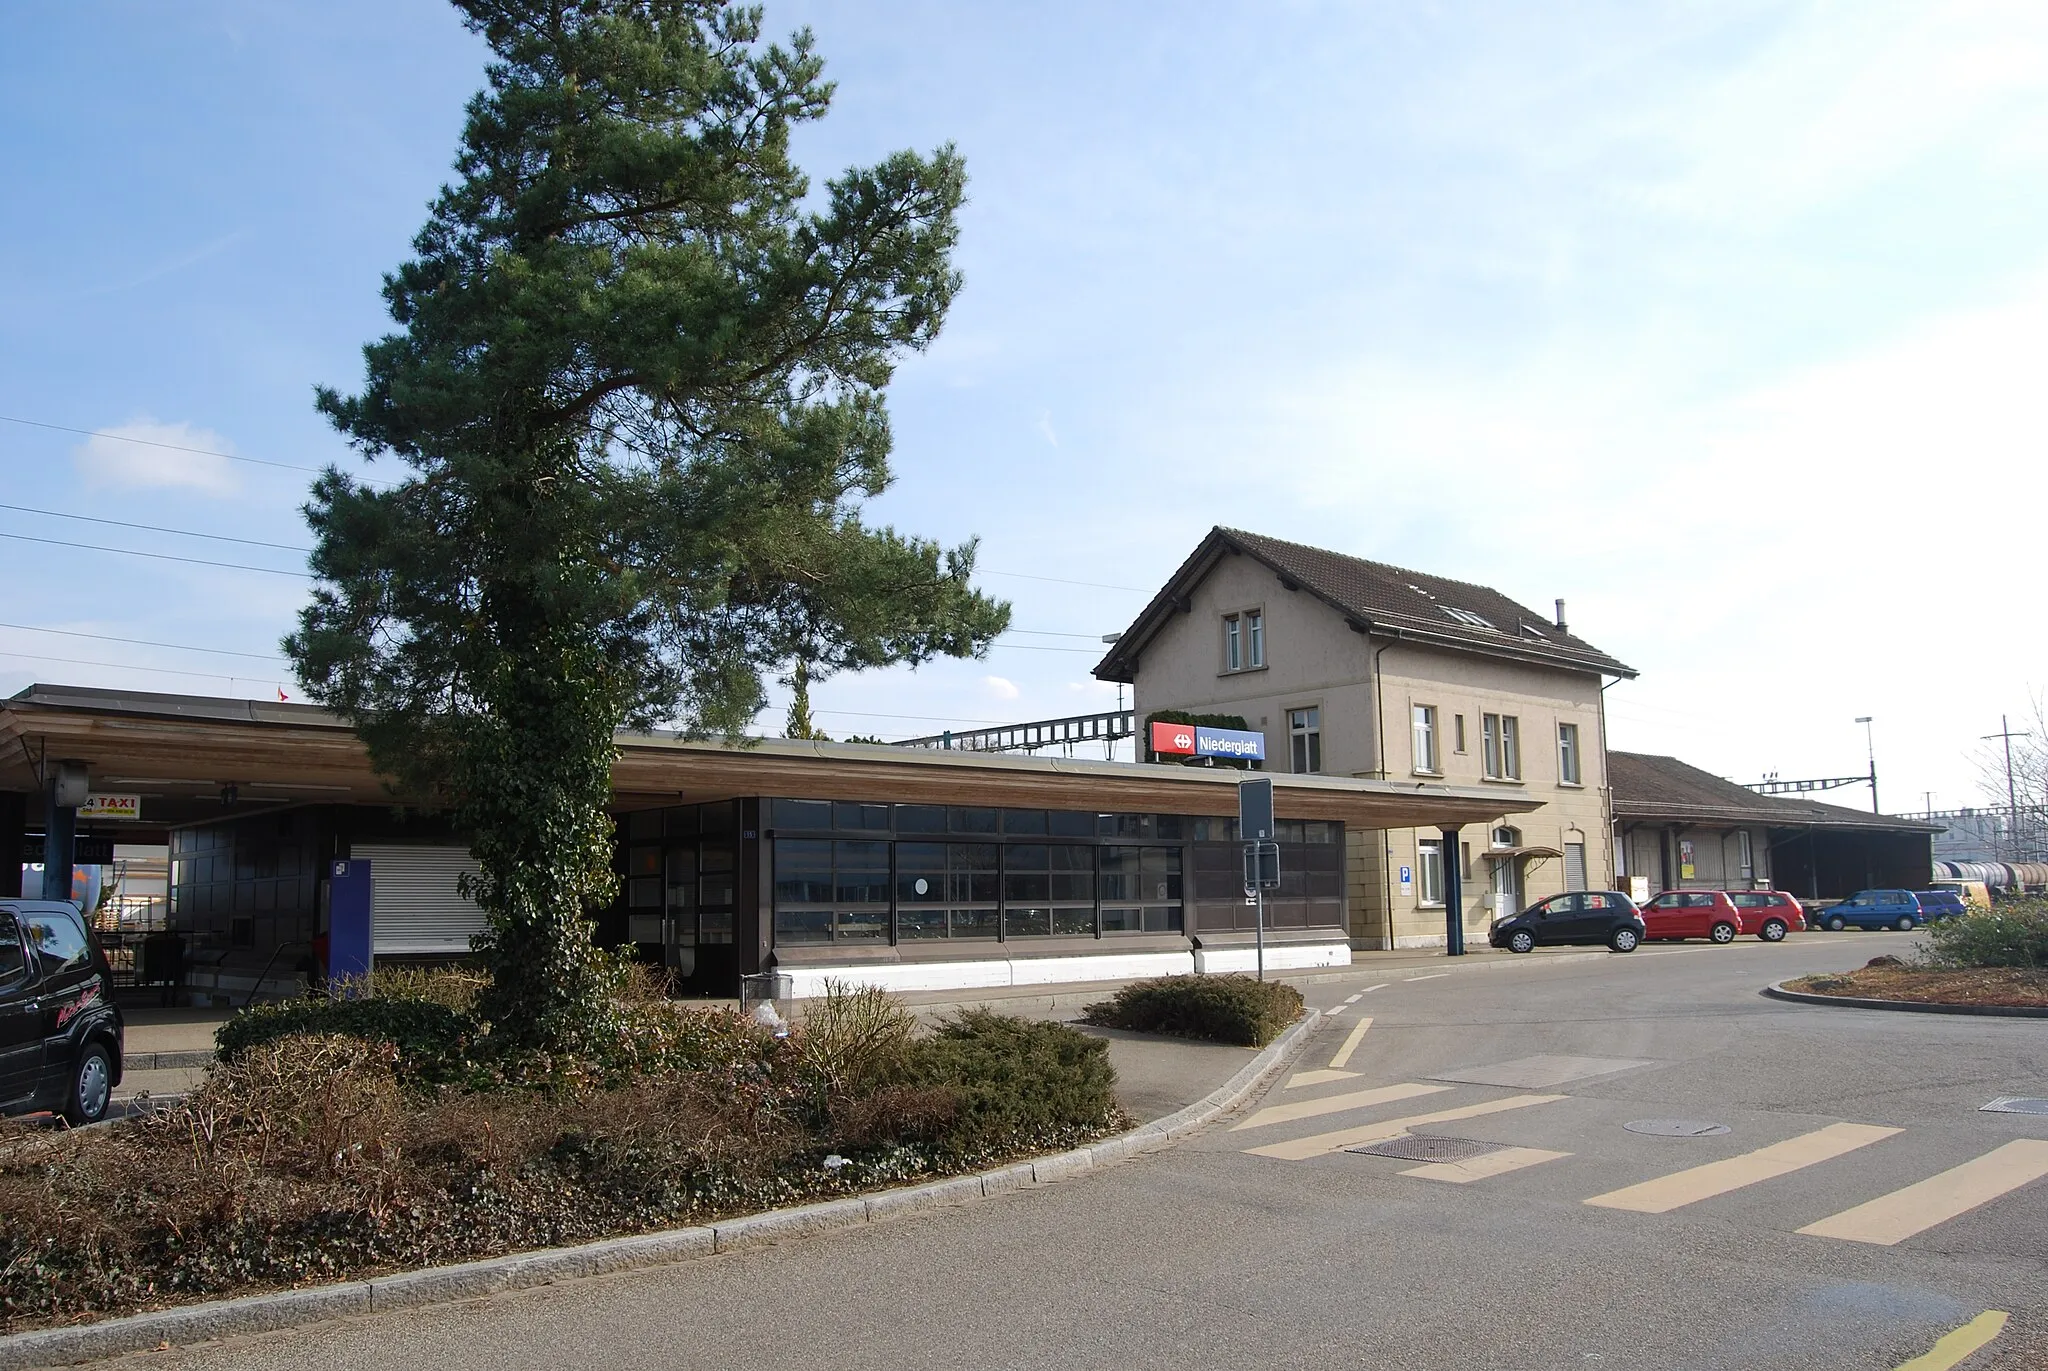 Photo showing: Train station of Niederglatt, canton of Zürich, Switzerland